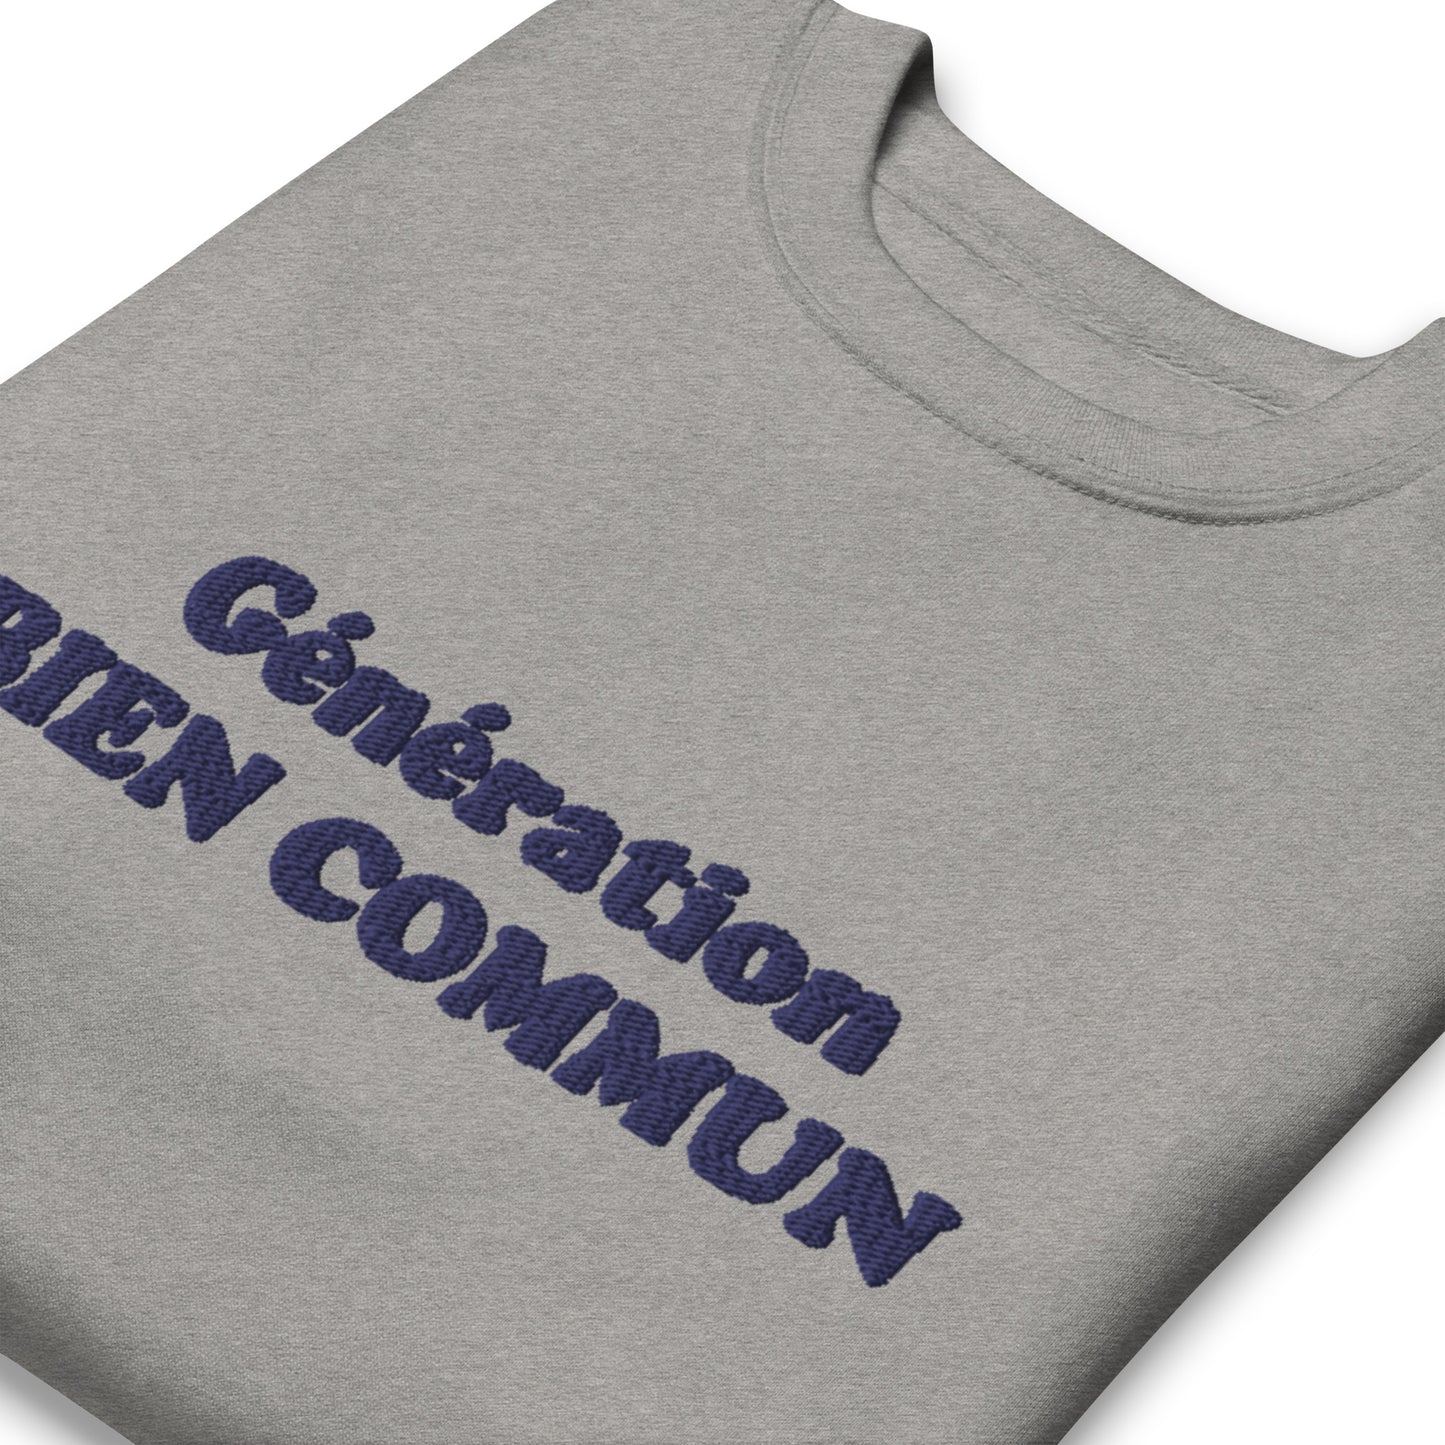 Sweat-shirt "Génération Bien Commun" Gris, brodé bleu.